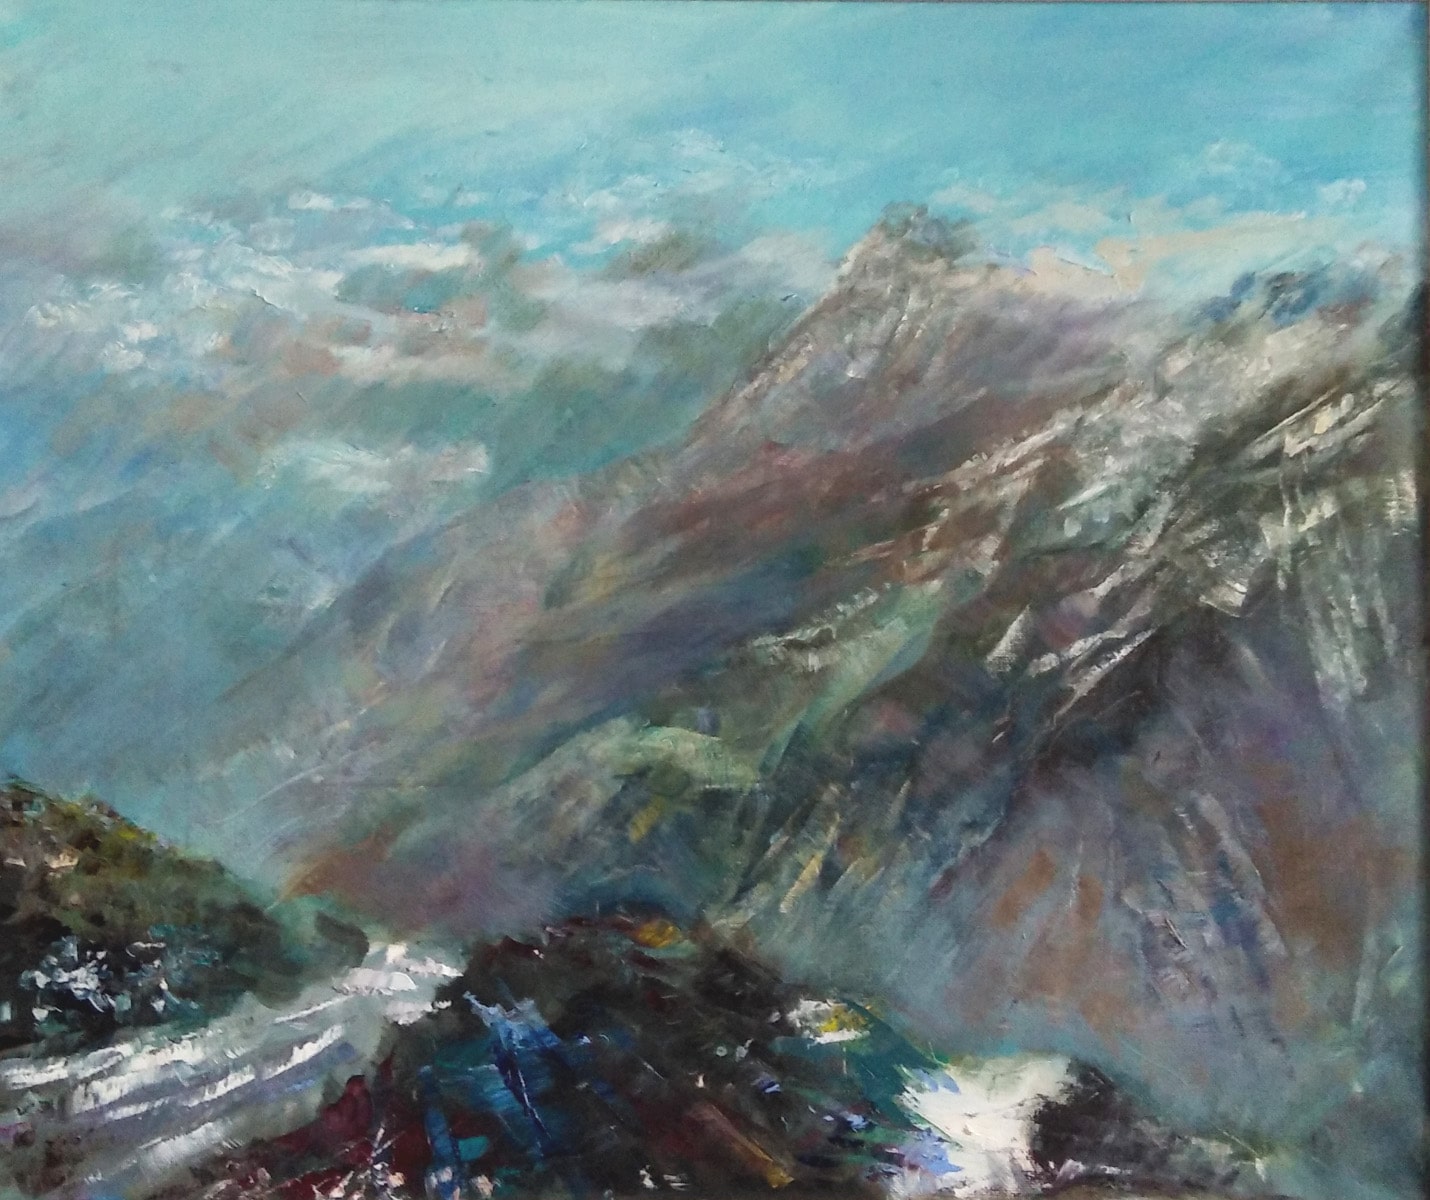 Эмоциональное изображение Эльбруса на картине выполненной маслом на холсте "Мои горы" художника Нины Дивинской (Волгоград)